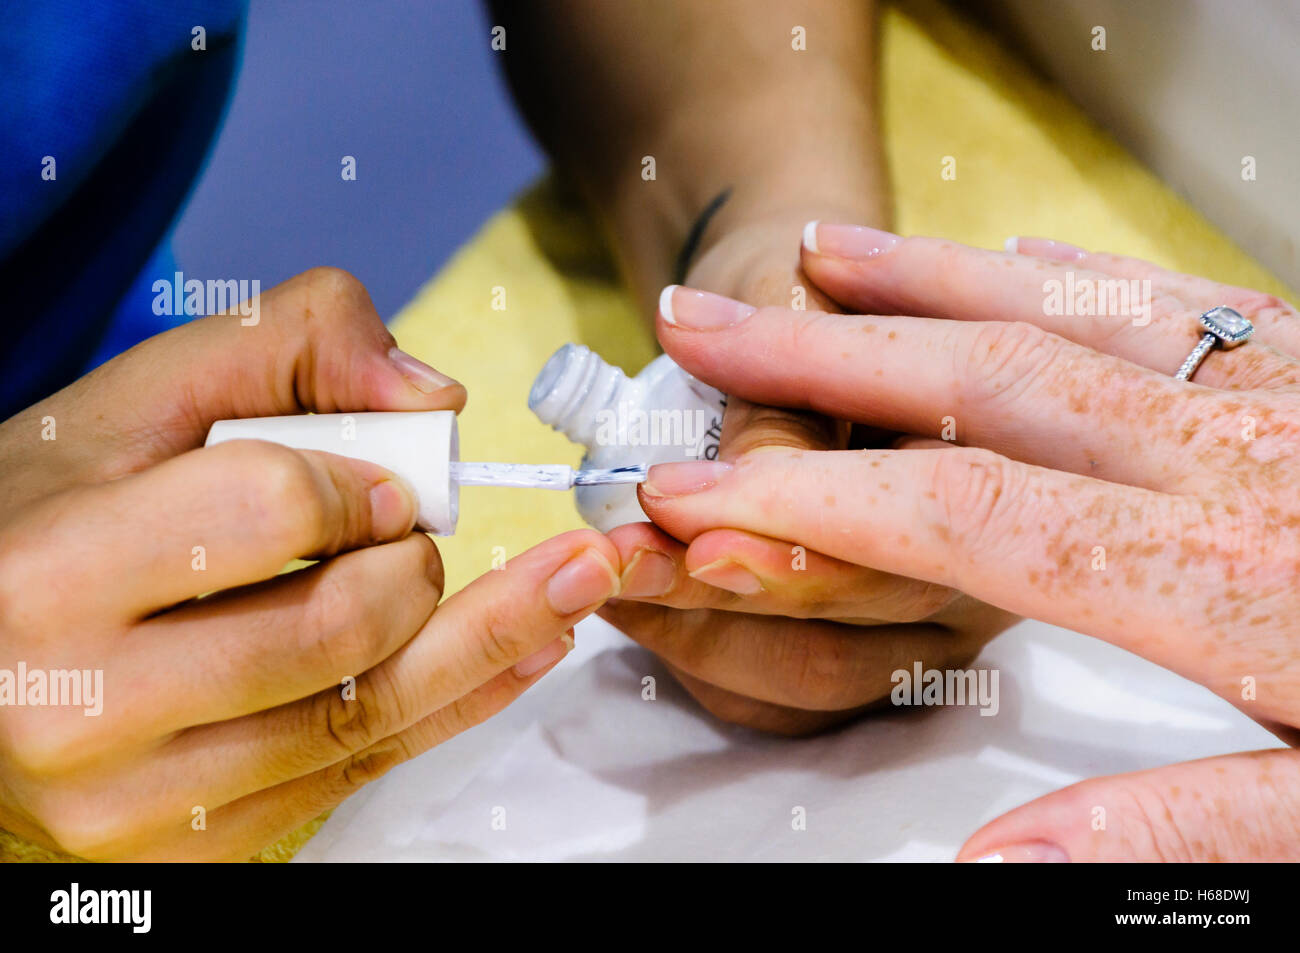 Eine Frau hat eine French Manicure Nagel Lack Behandlung in einem Schönheitssalon. Stockfoto